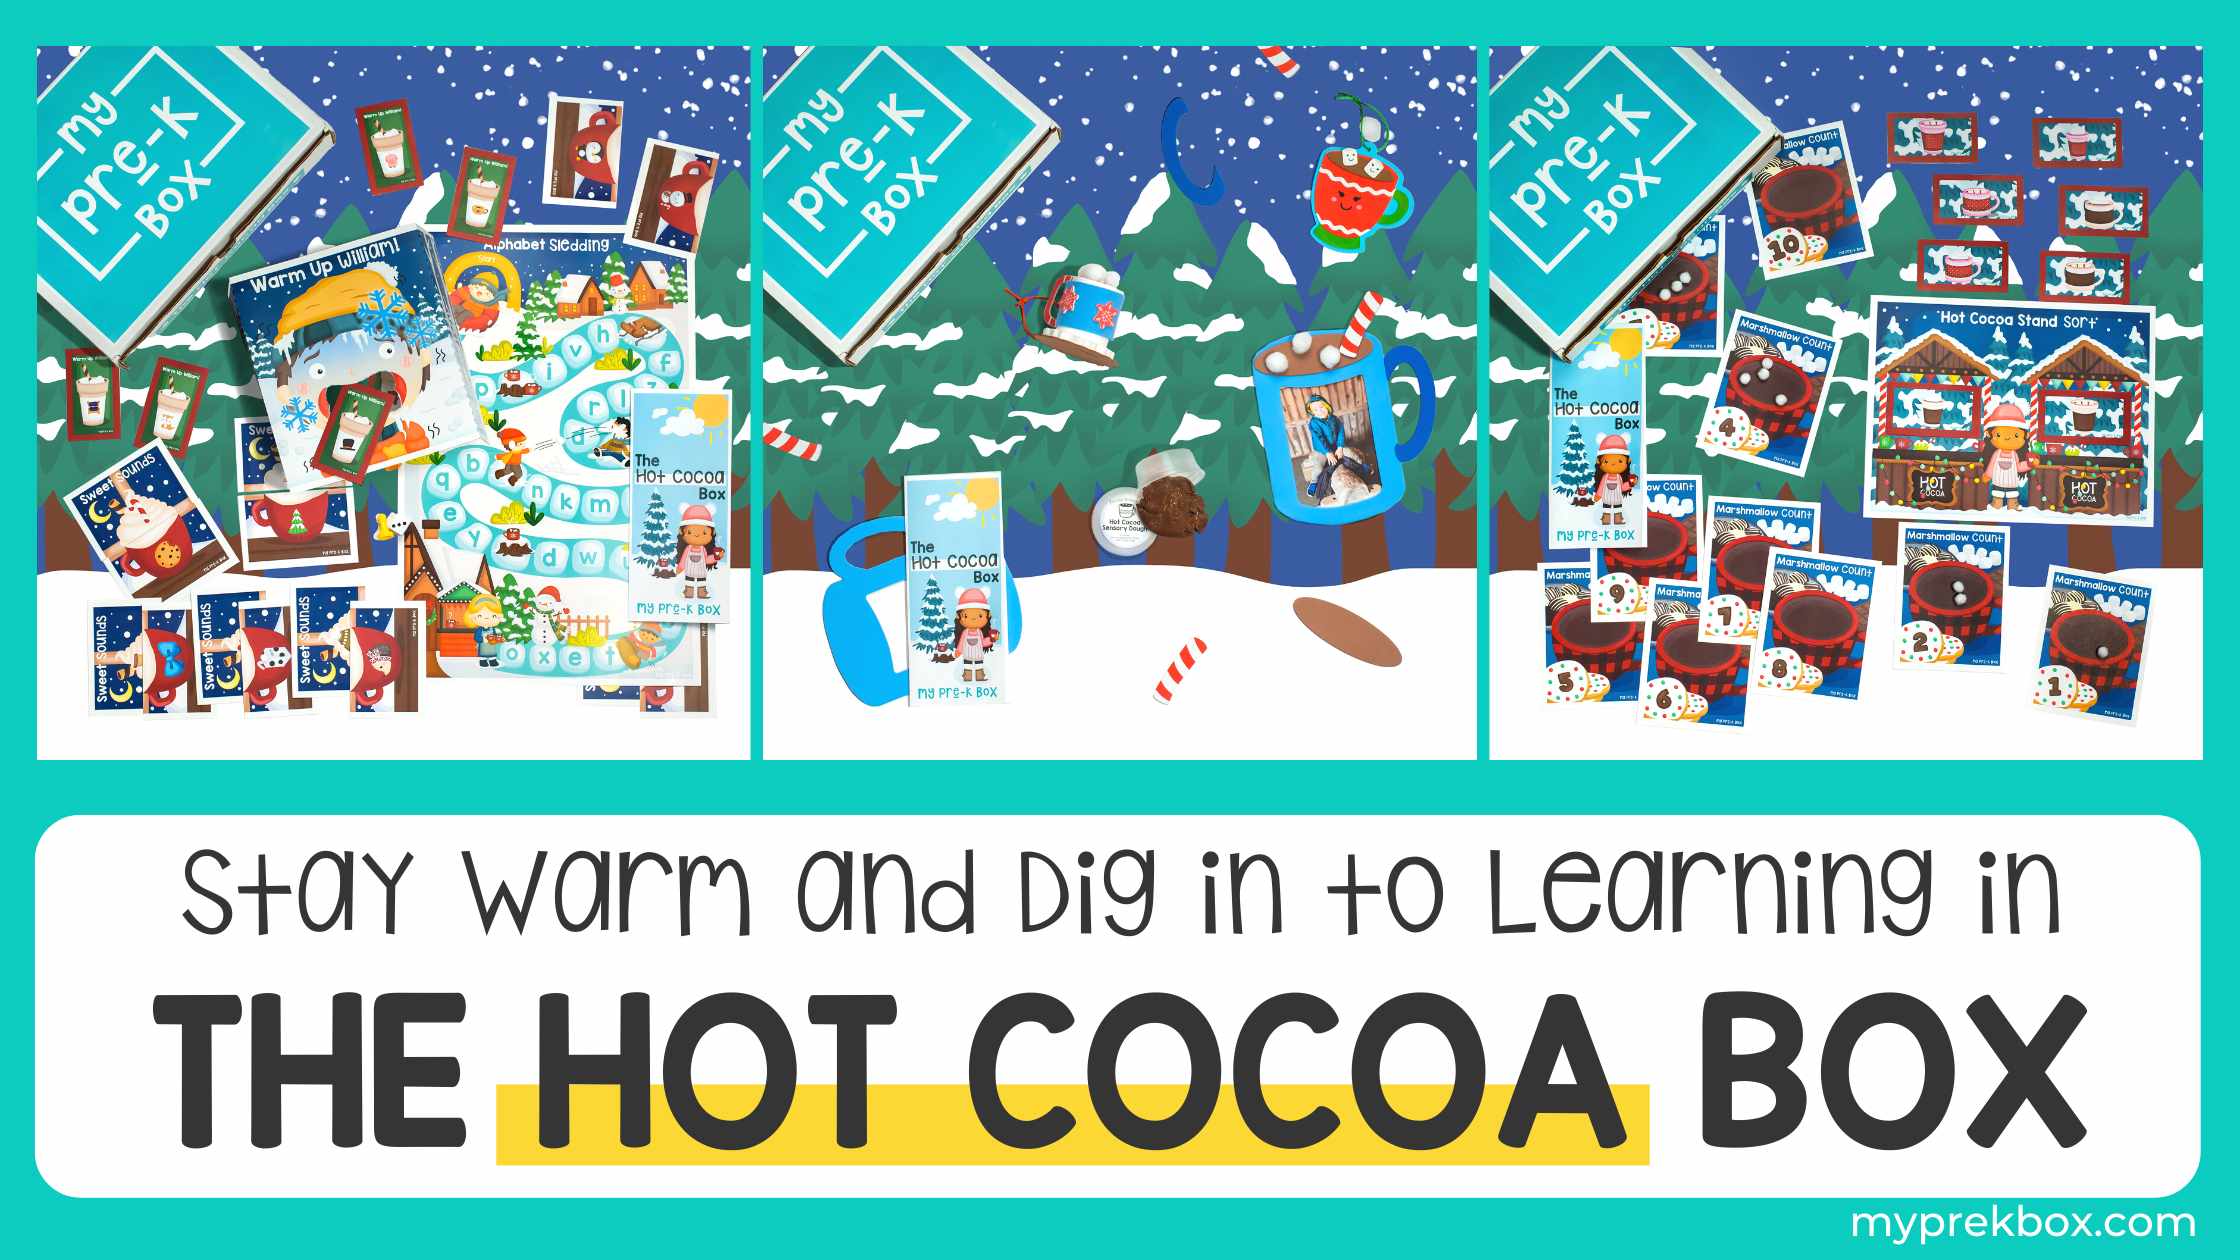 The Hot Cocoa Box